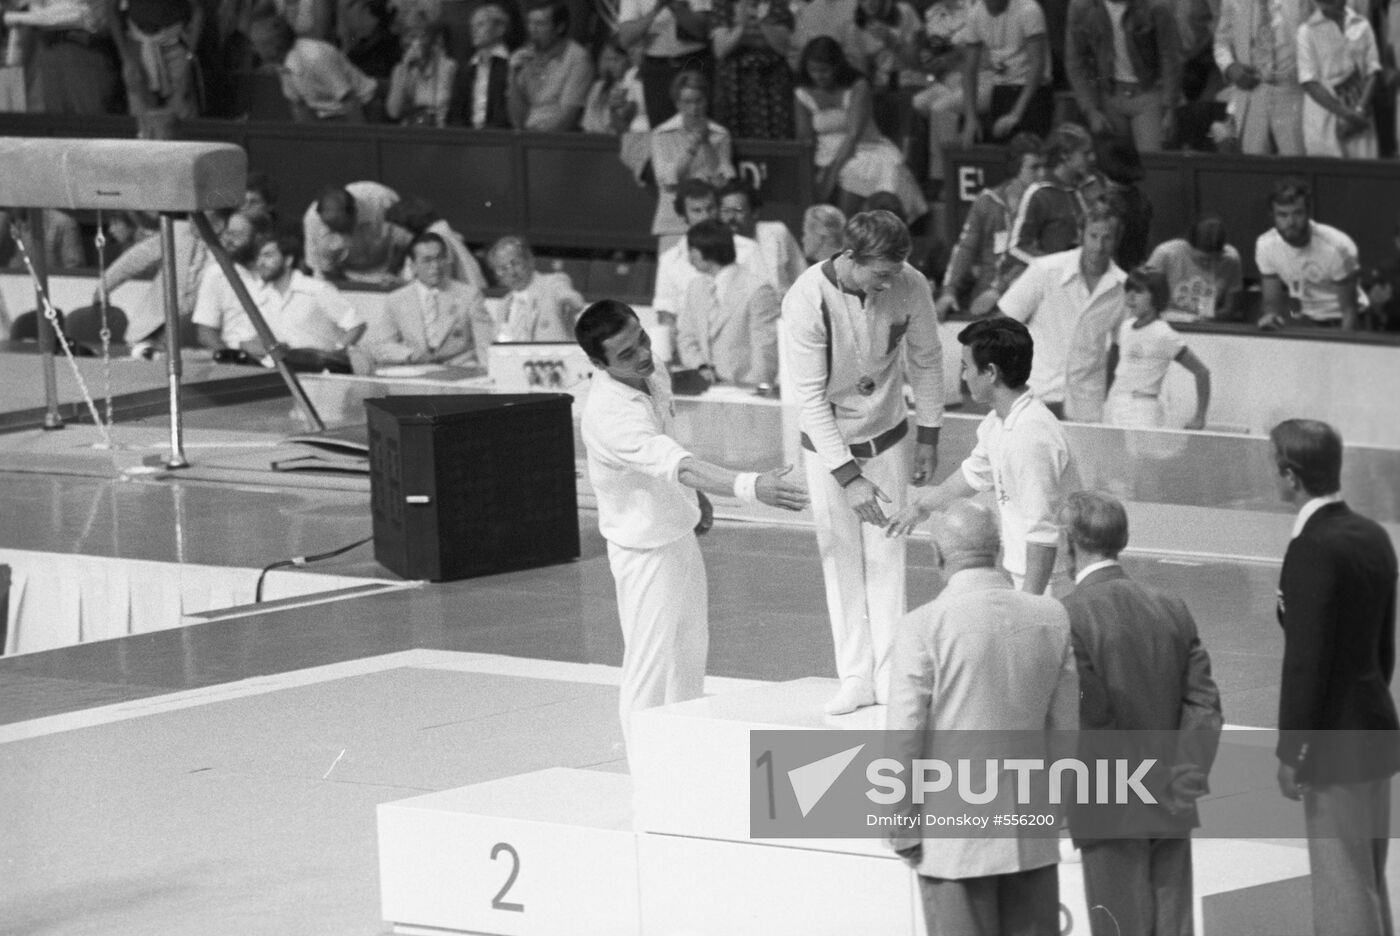 Men's vault event winners of 1976 Montreal Olympics